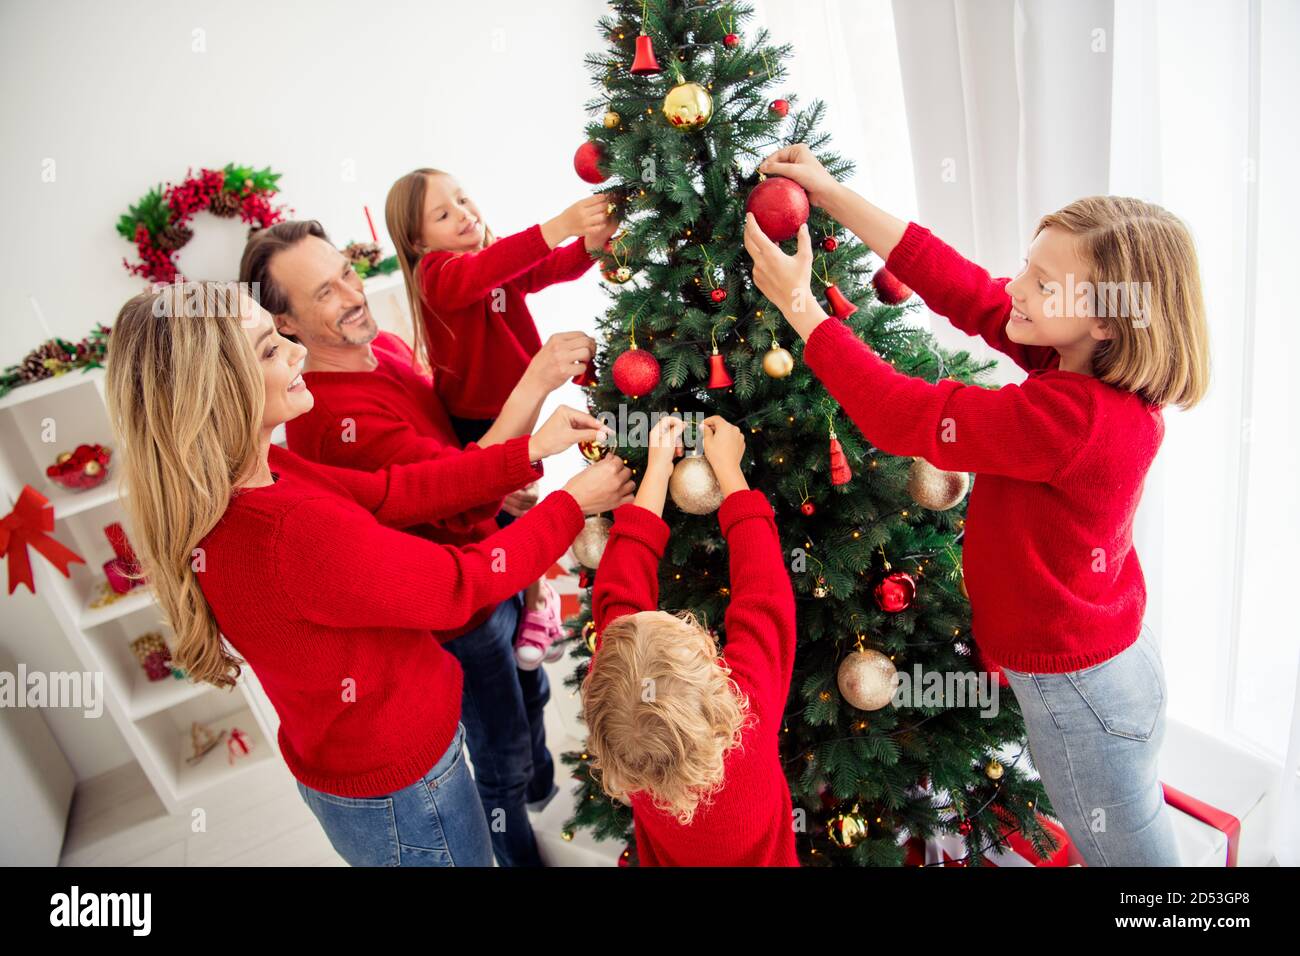 Foto der ganzen großen Familie fünf Menschen sammeln Liebhaber Eltern Drei kleine Kinder schmücken Weihnachtsbaum halten Bälle Papa Hilfe Die Beleuchtung der Tochter trägt einen roten Pullover Stockfoto